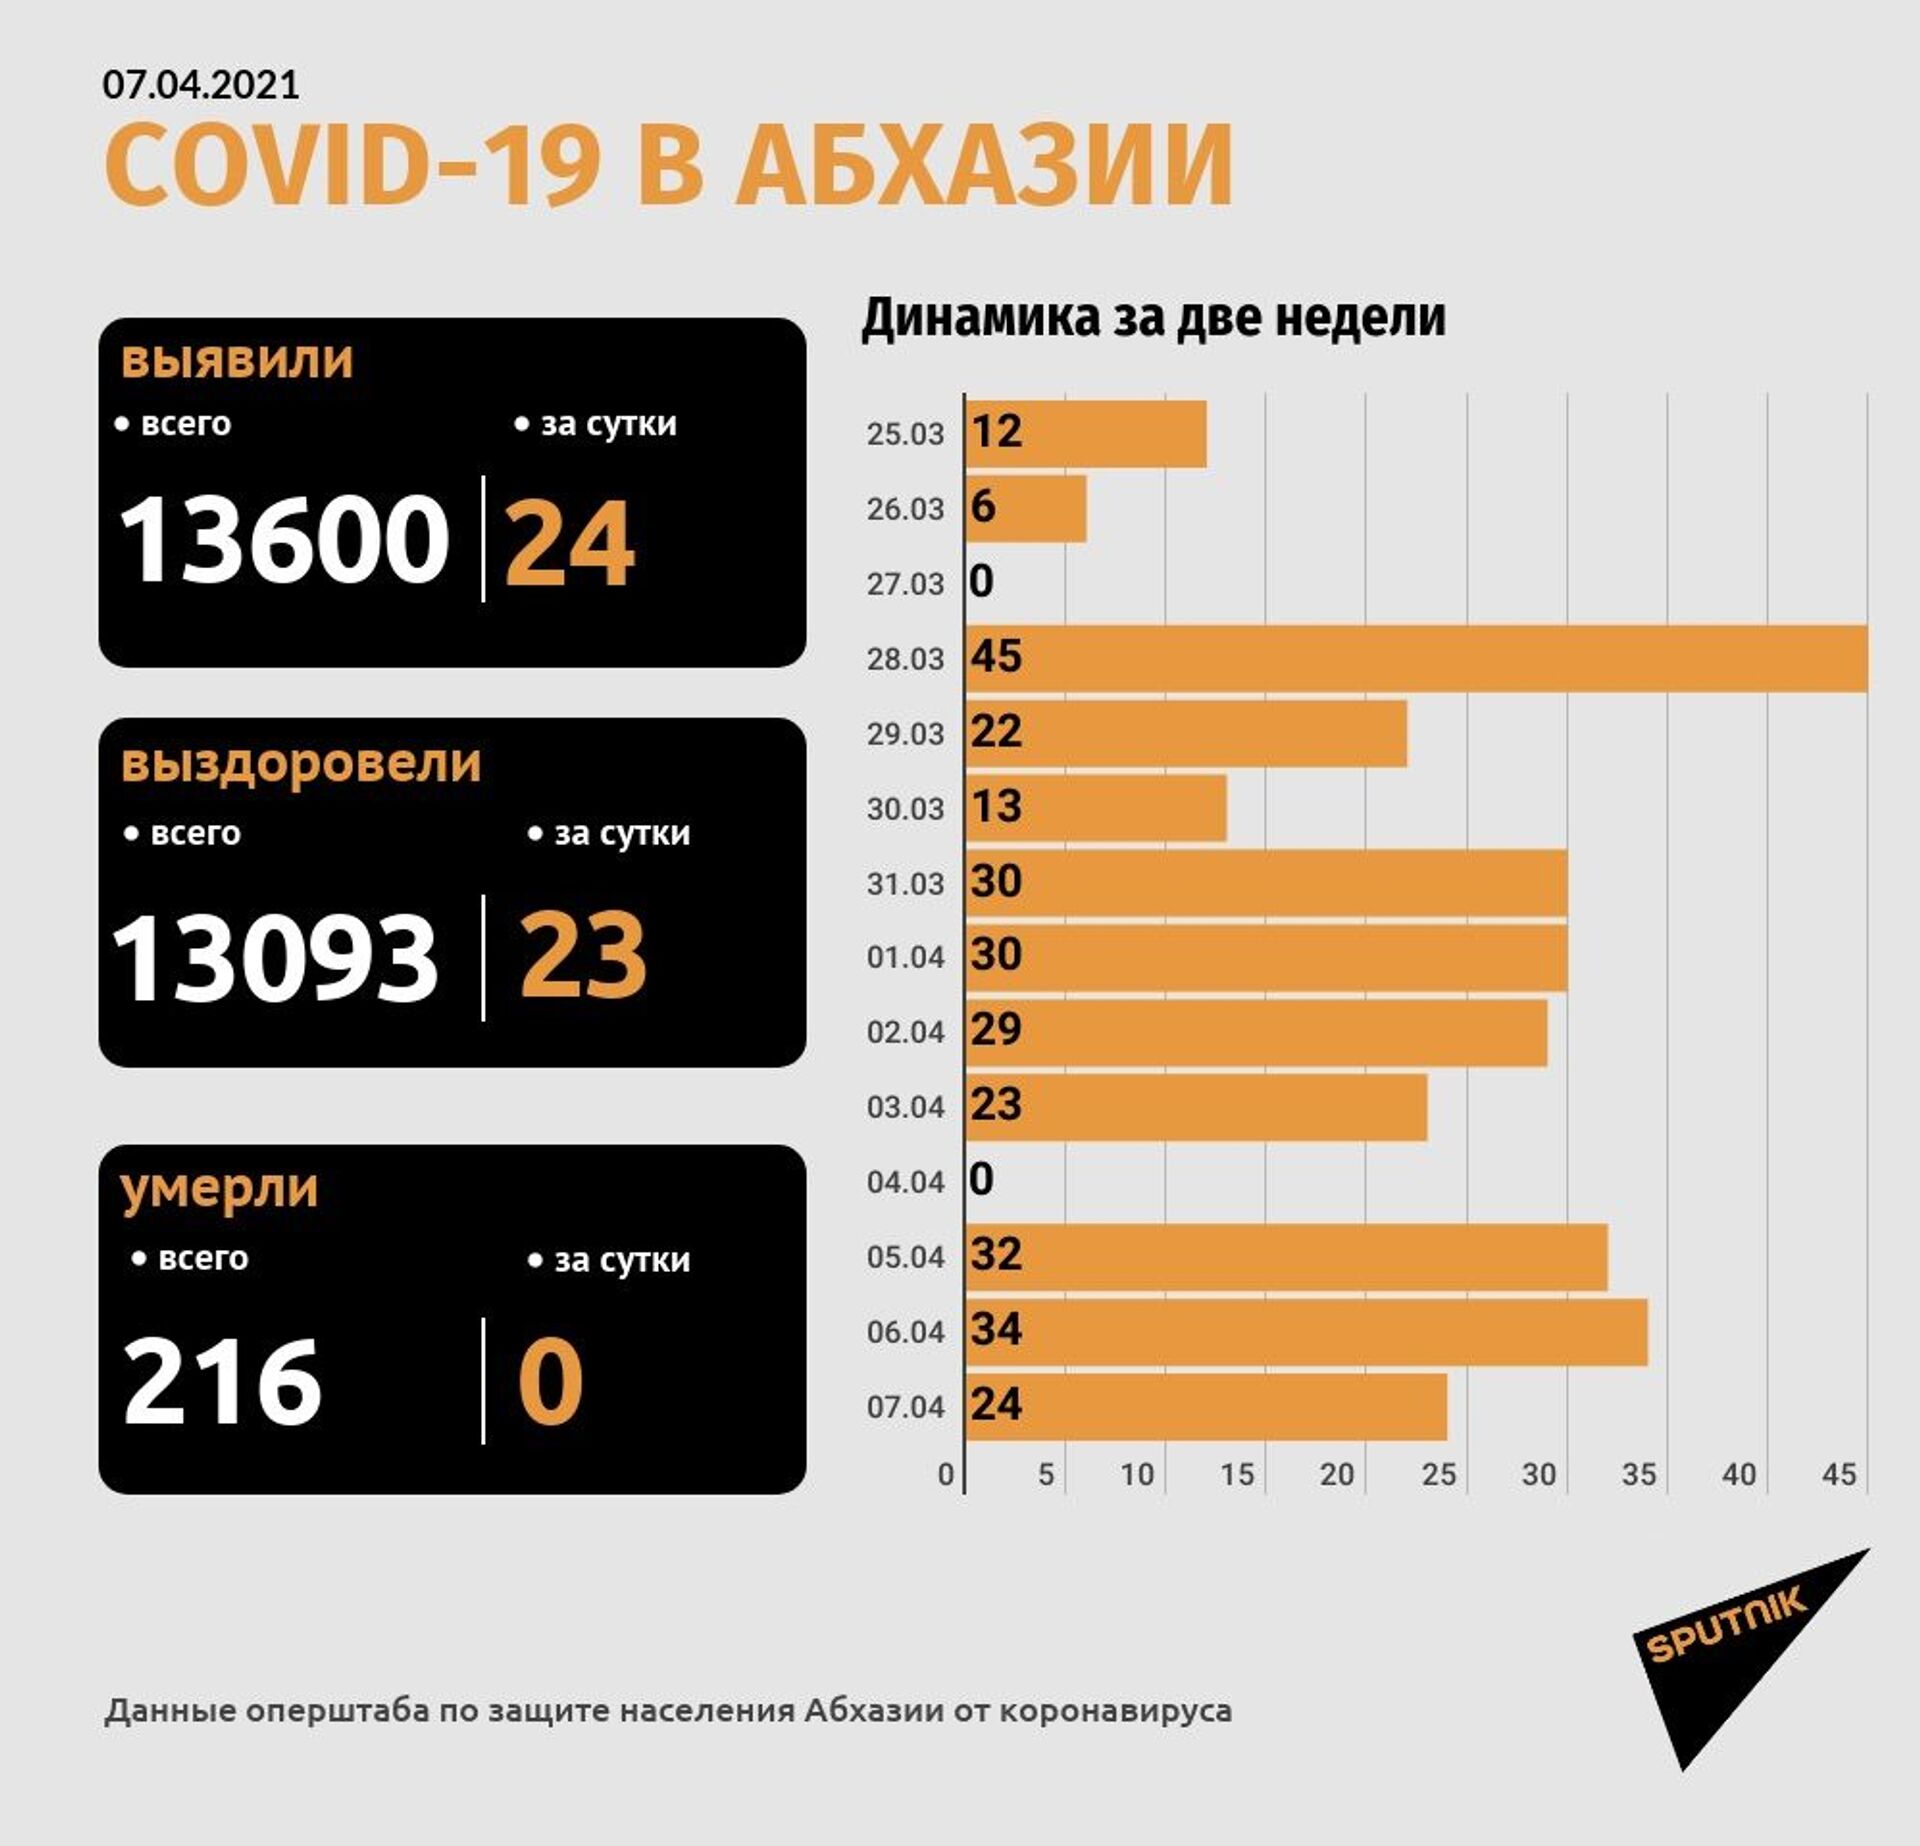 Число выявленных случаев коронавируса в Абхазии выросло на 24 за сутки - Sputnik Абхазия, 1920, 07.04.2021